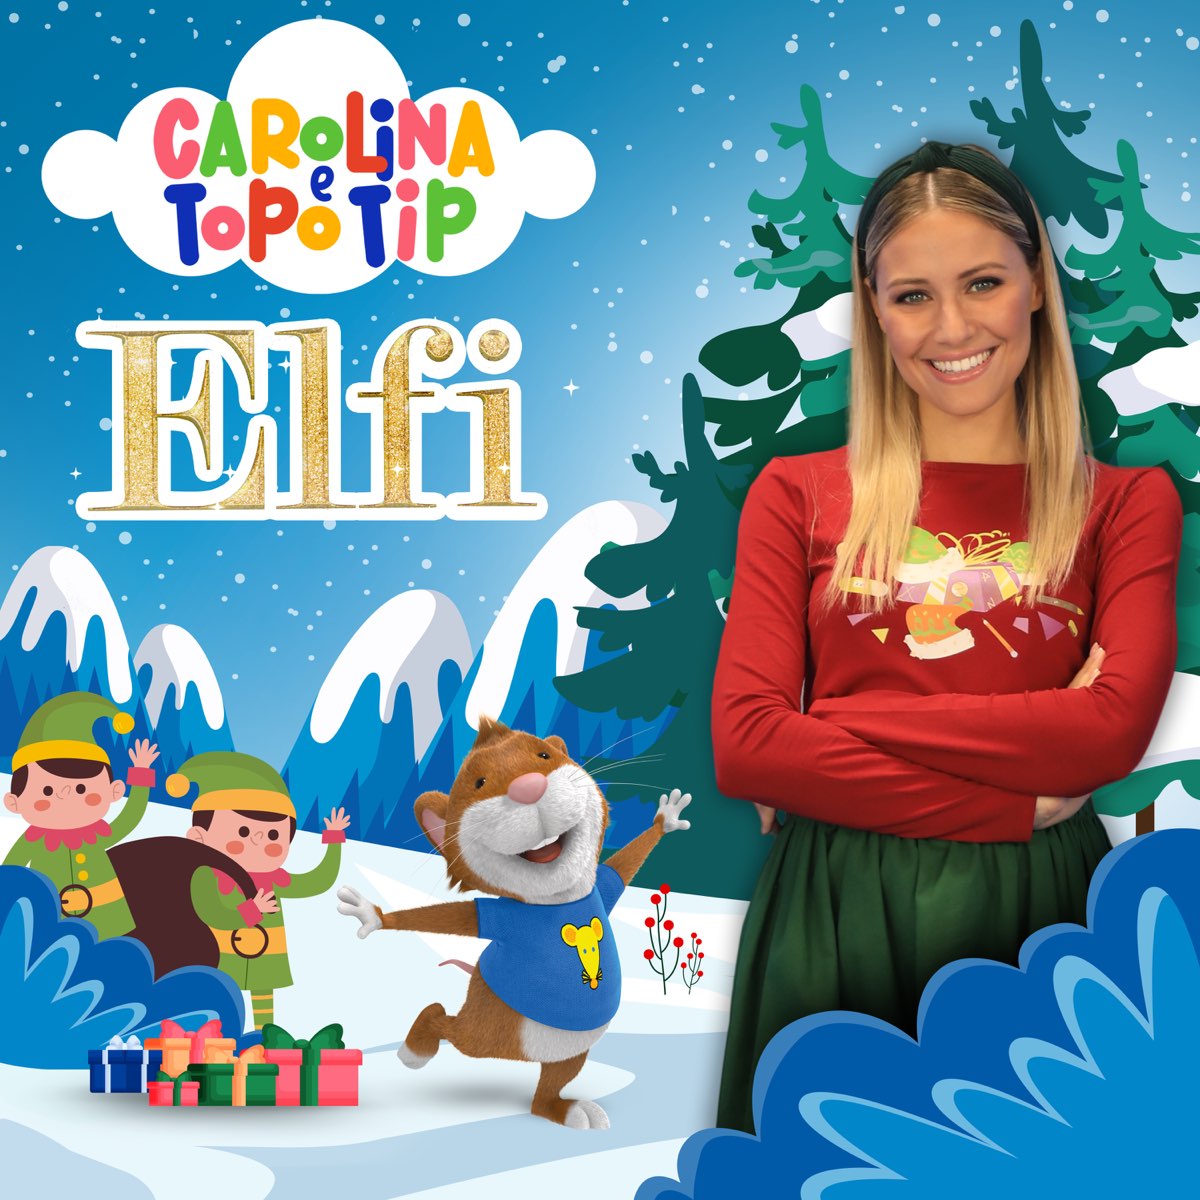 Play Carolina e Topo Tip: tutti su le mani! by Carolina Benvenga